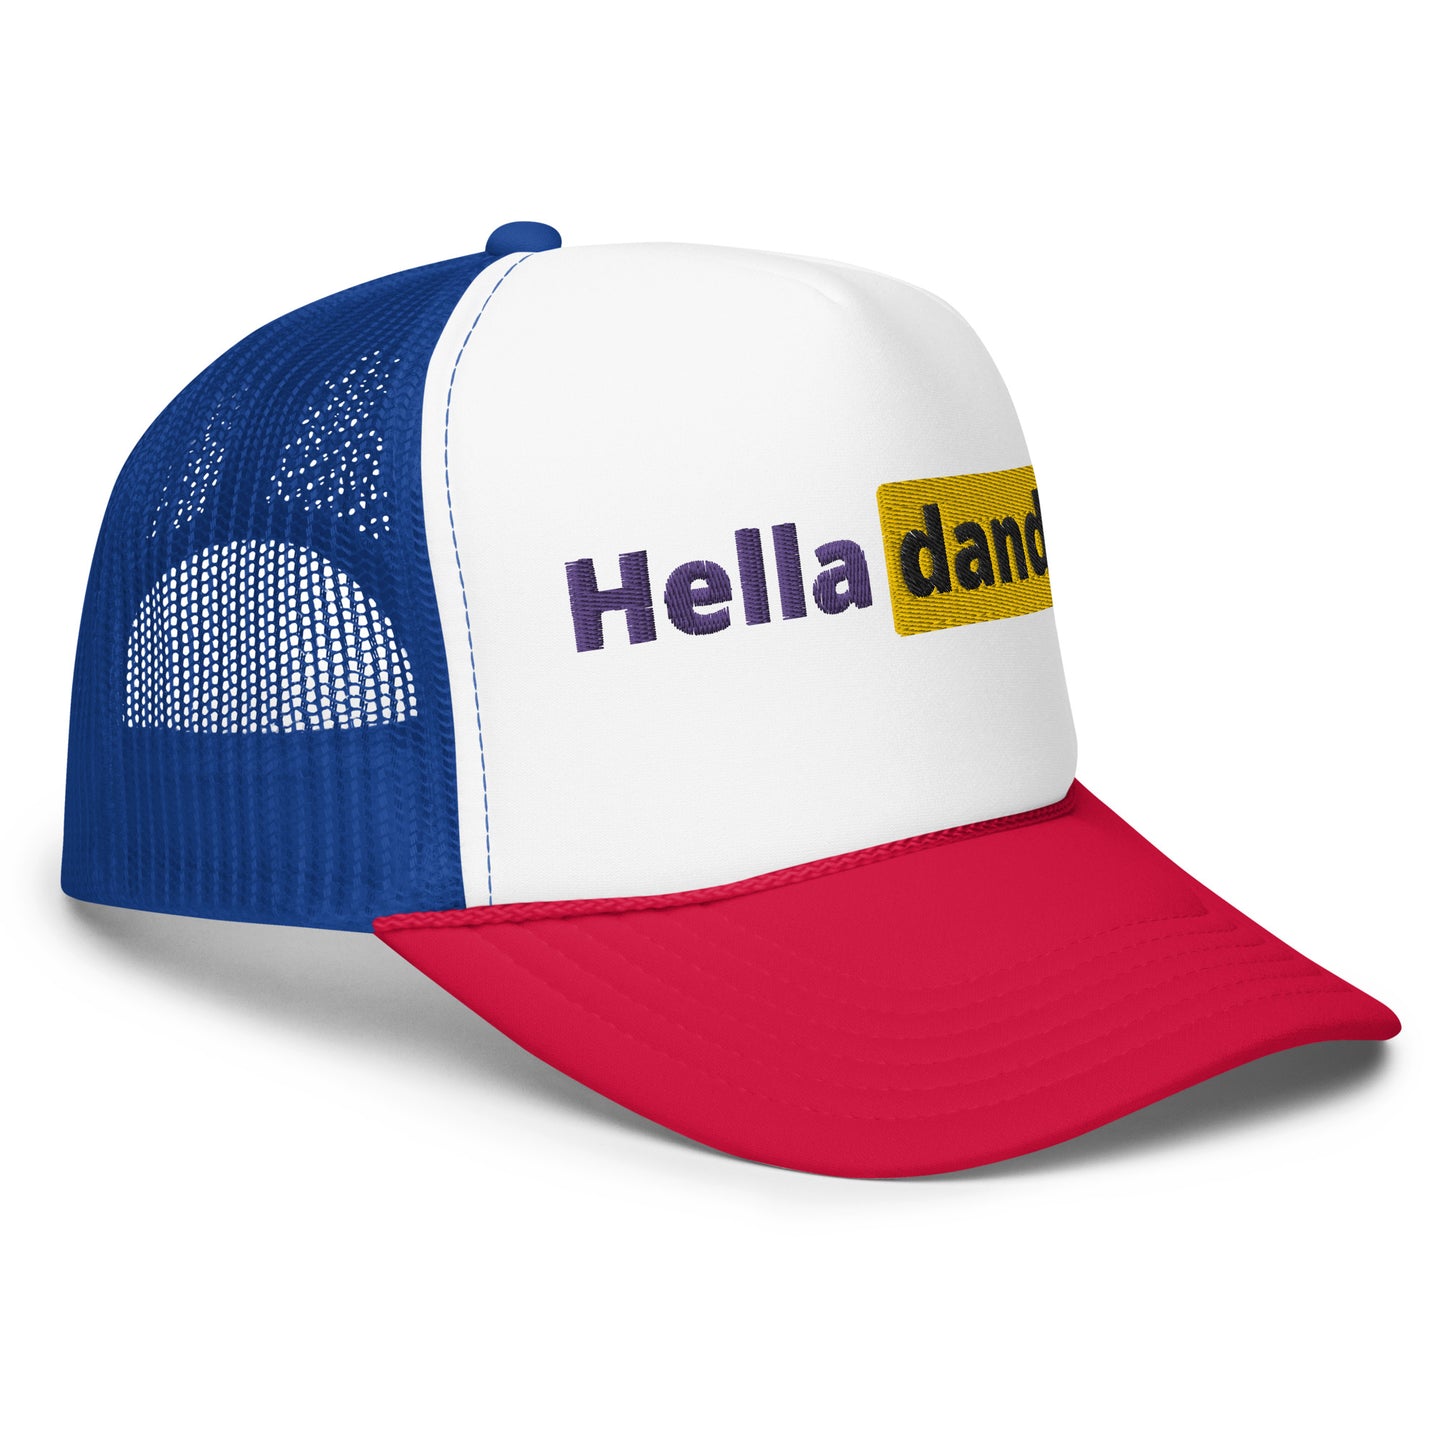 The Hub Foam trucker hat